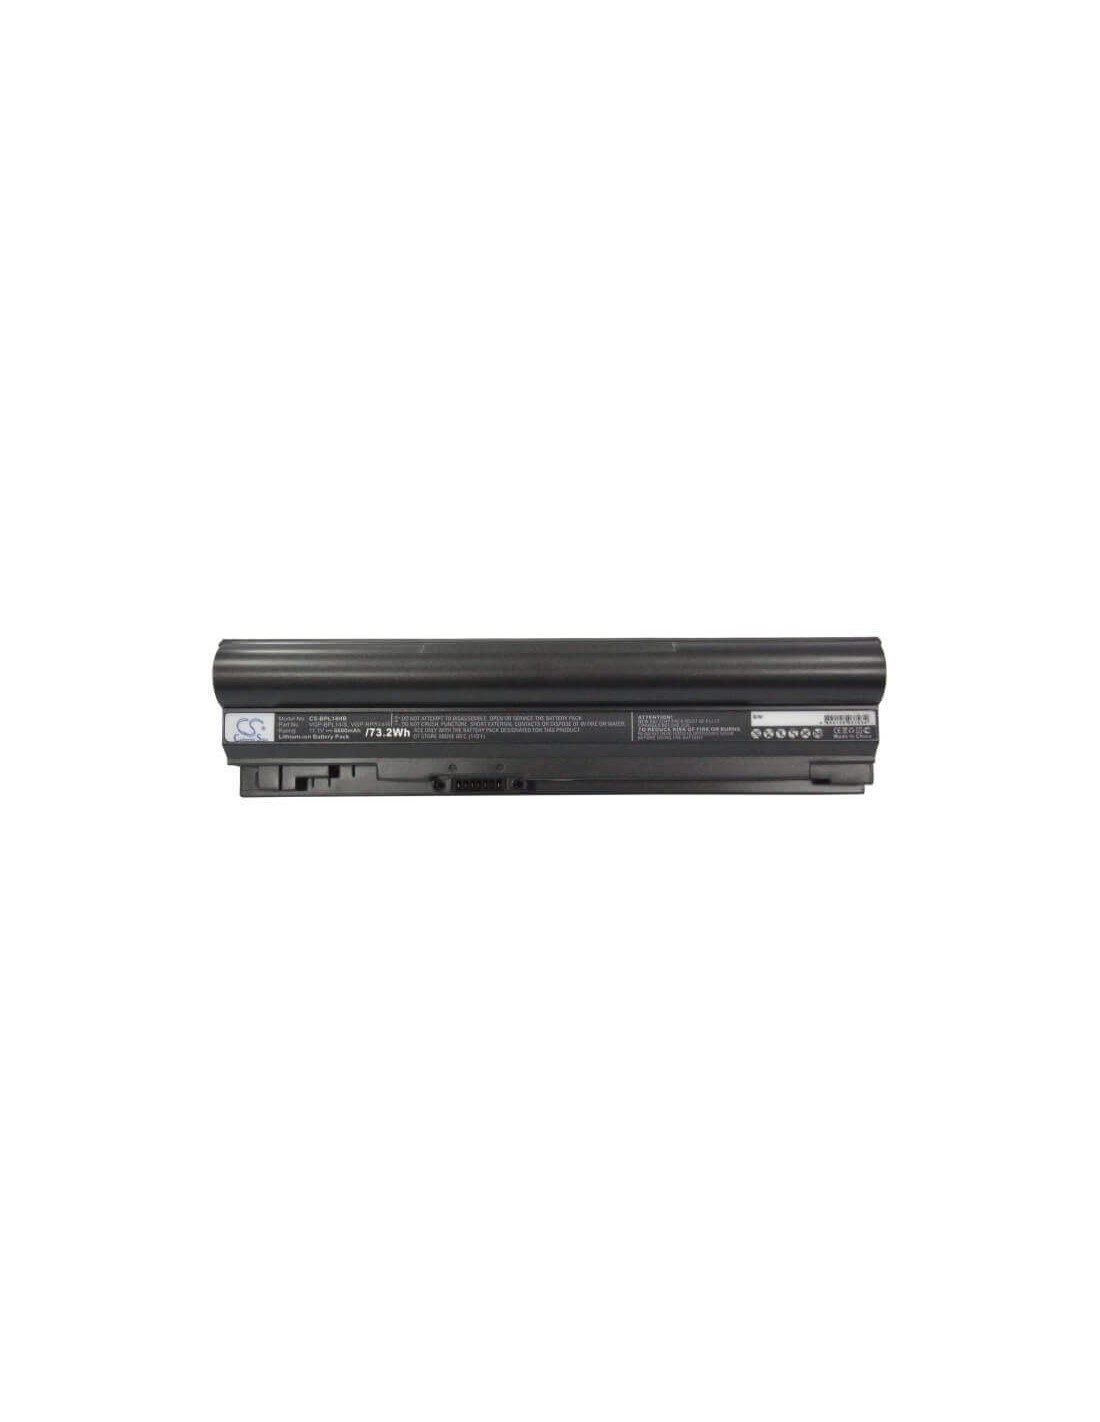 Black Battery for Sony Vaio Vgn-tt11m, Vaio Vgn-tt13/n, Vaio Vgn-tt190ein 11.1V, 6600mAh - 73.26Wh